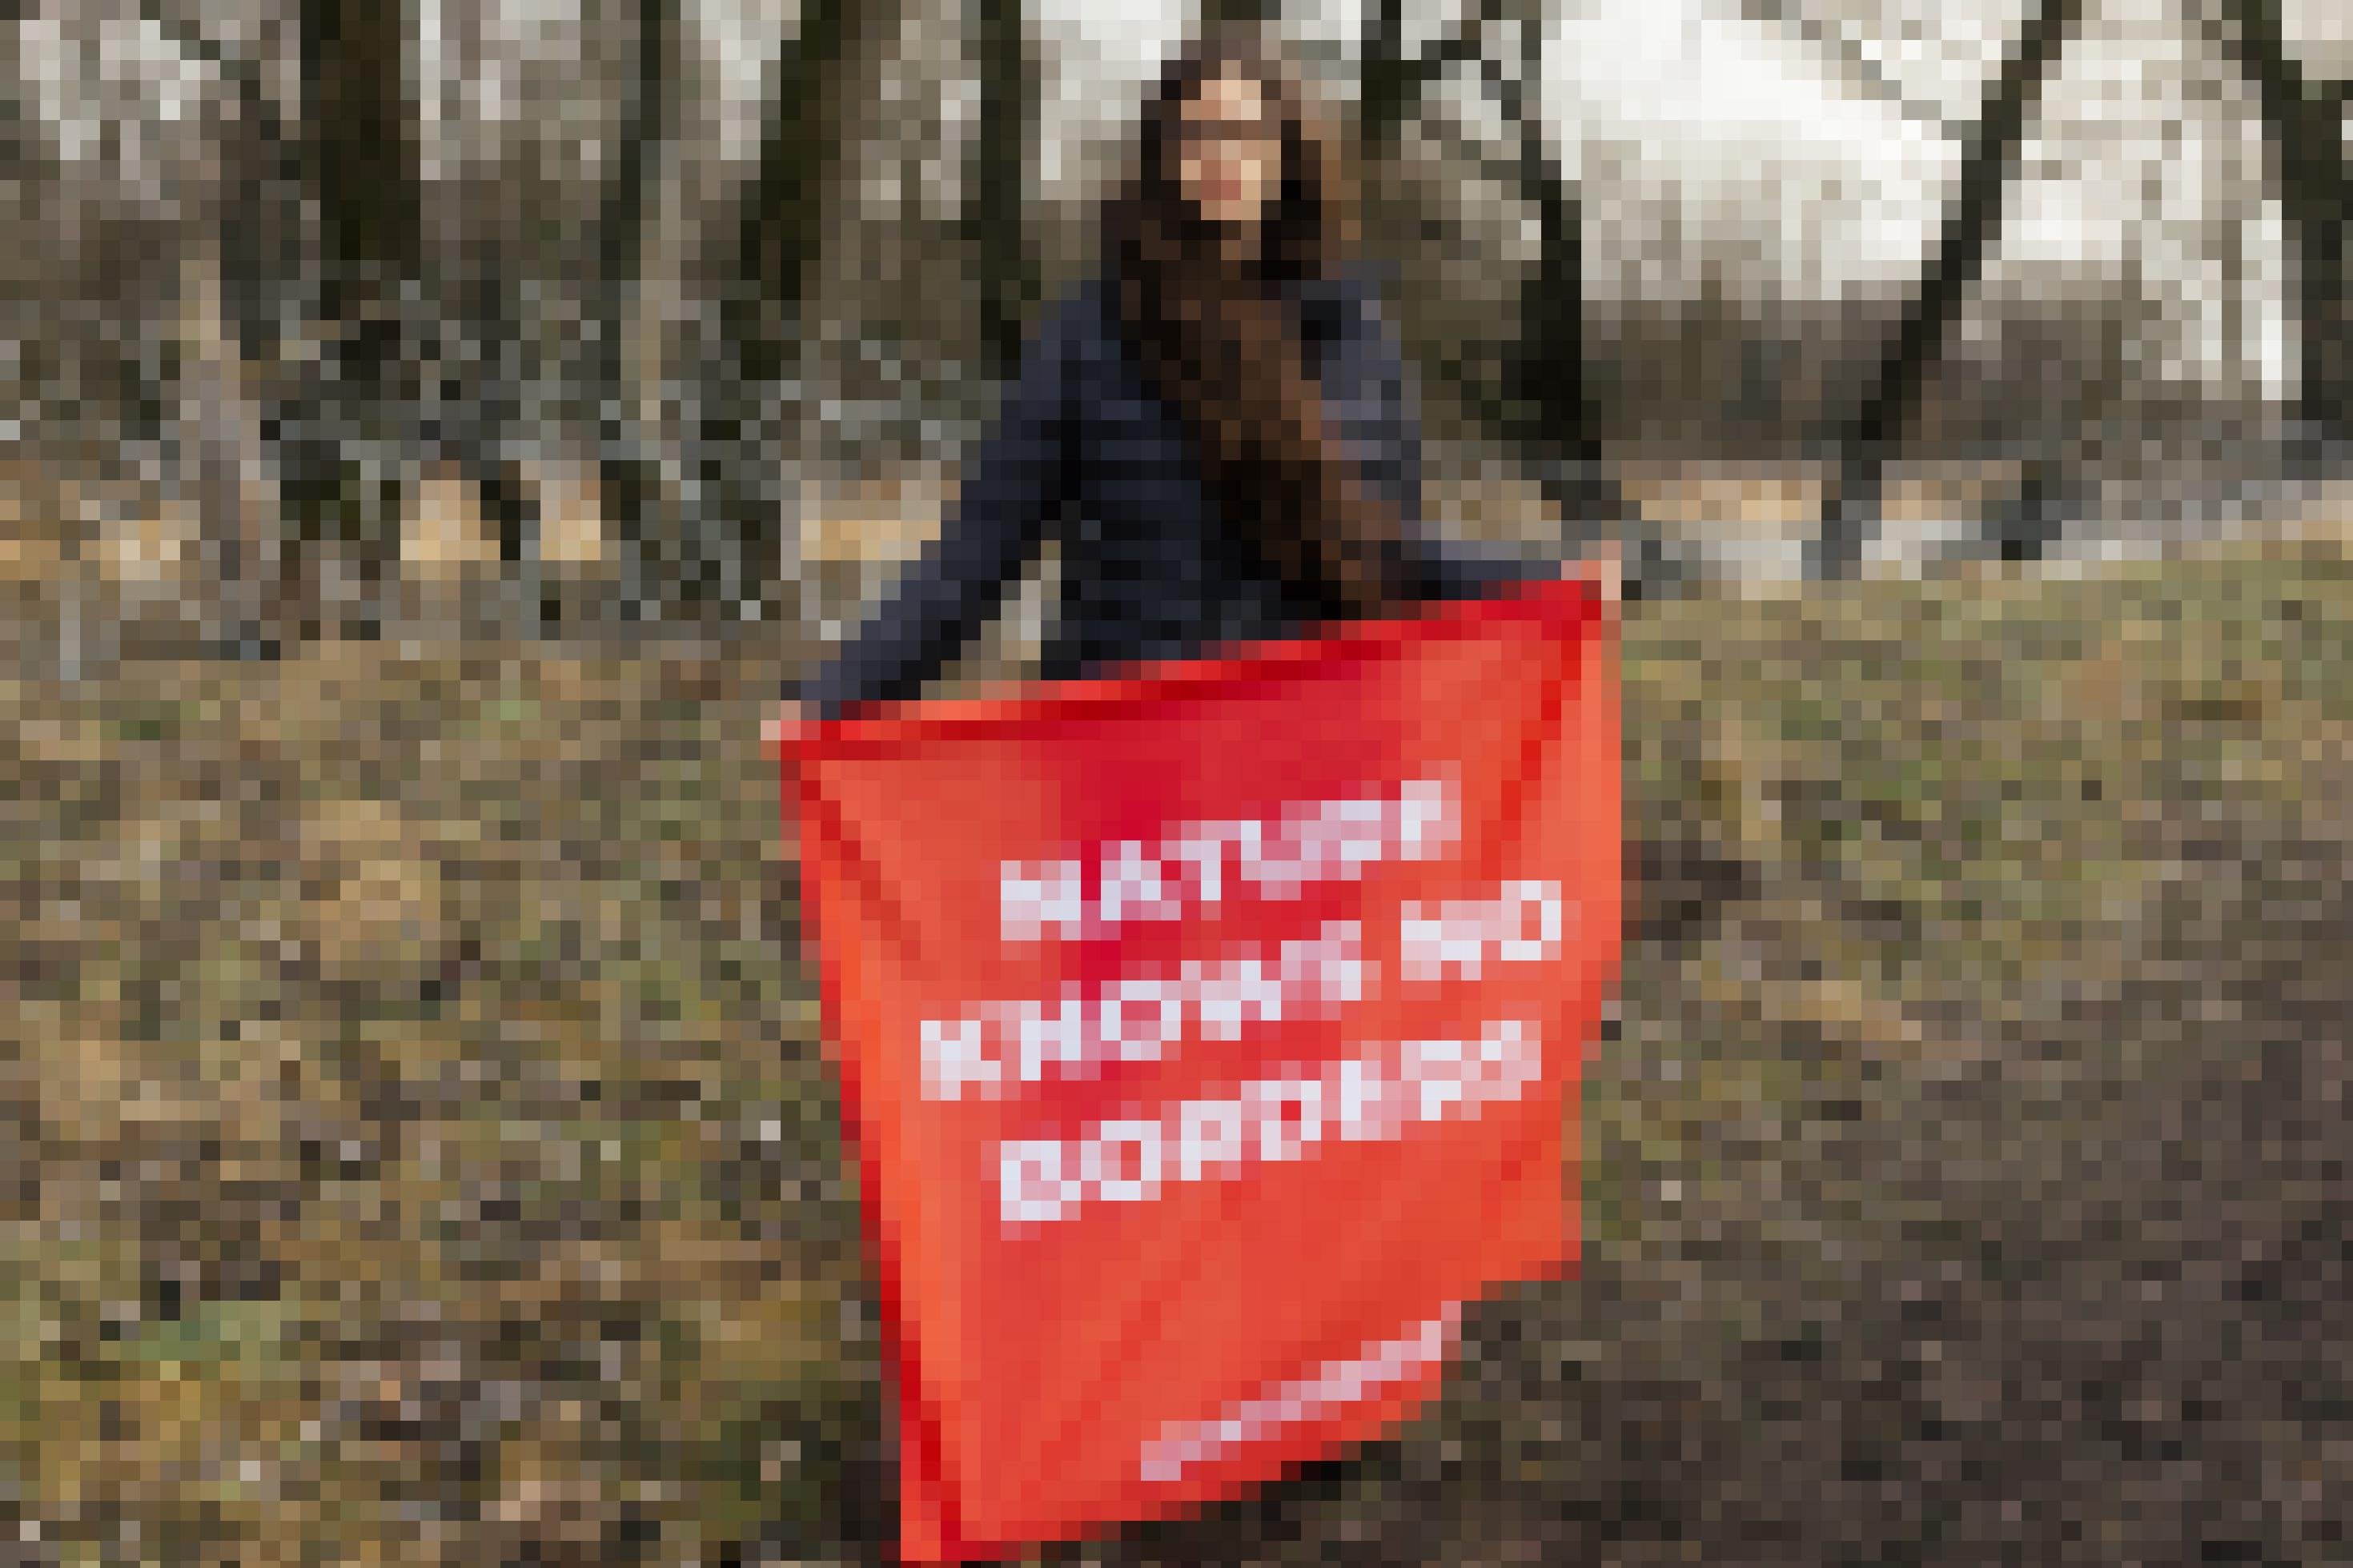 Eine Greenpeace-Aktivistin protestiert am Grenzfluss Bug gegen die Einzäunung. Mit einem Plakat „Natur kennt keine Grenzen“ steht sie vor Stacheldrahtrollen am Flussufer.